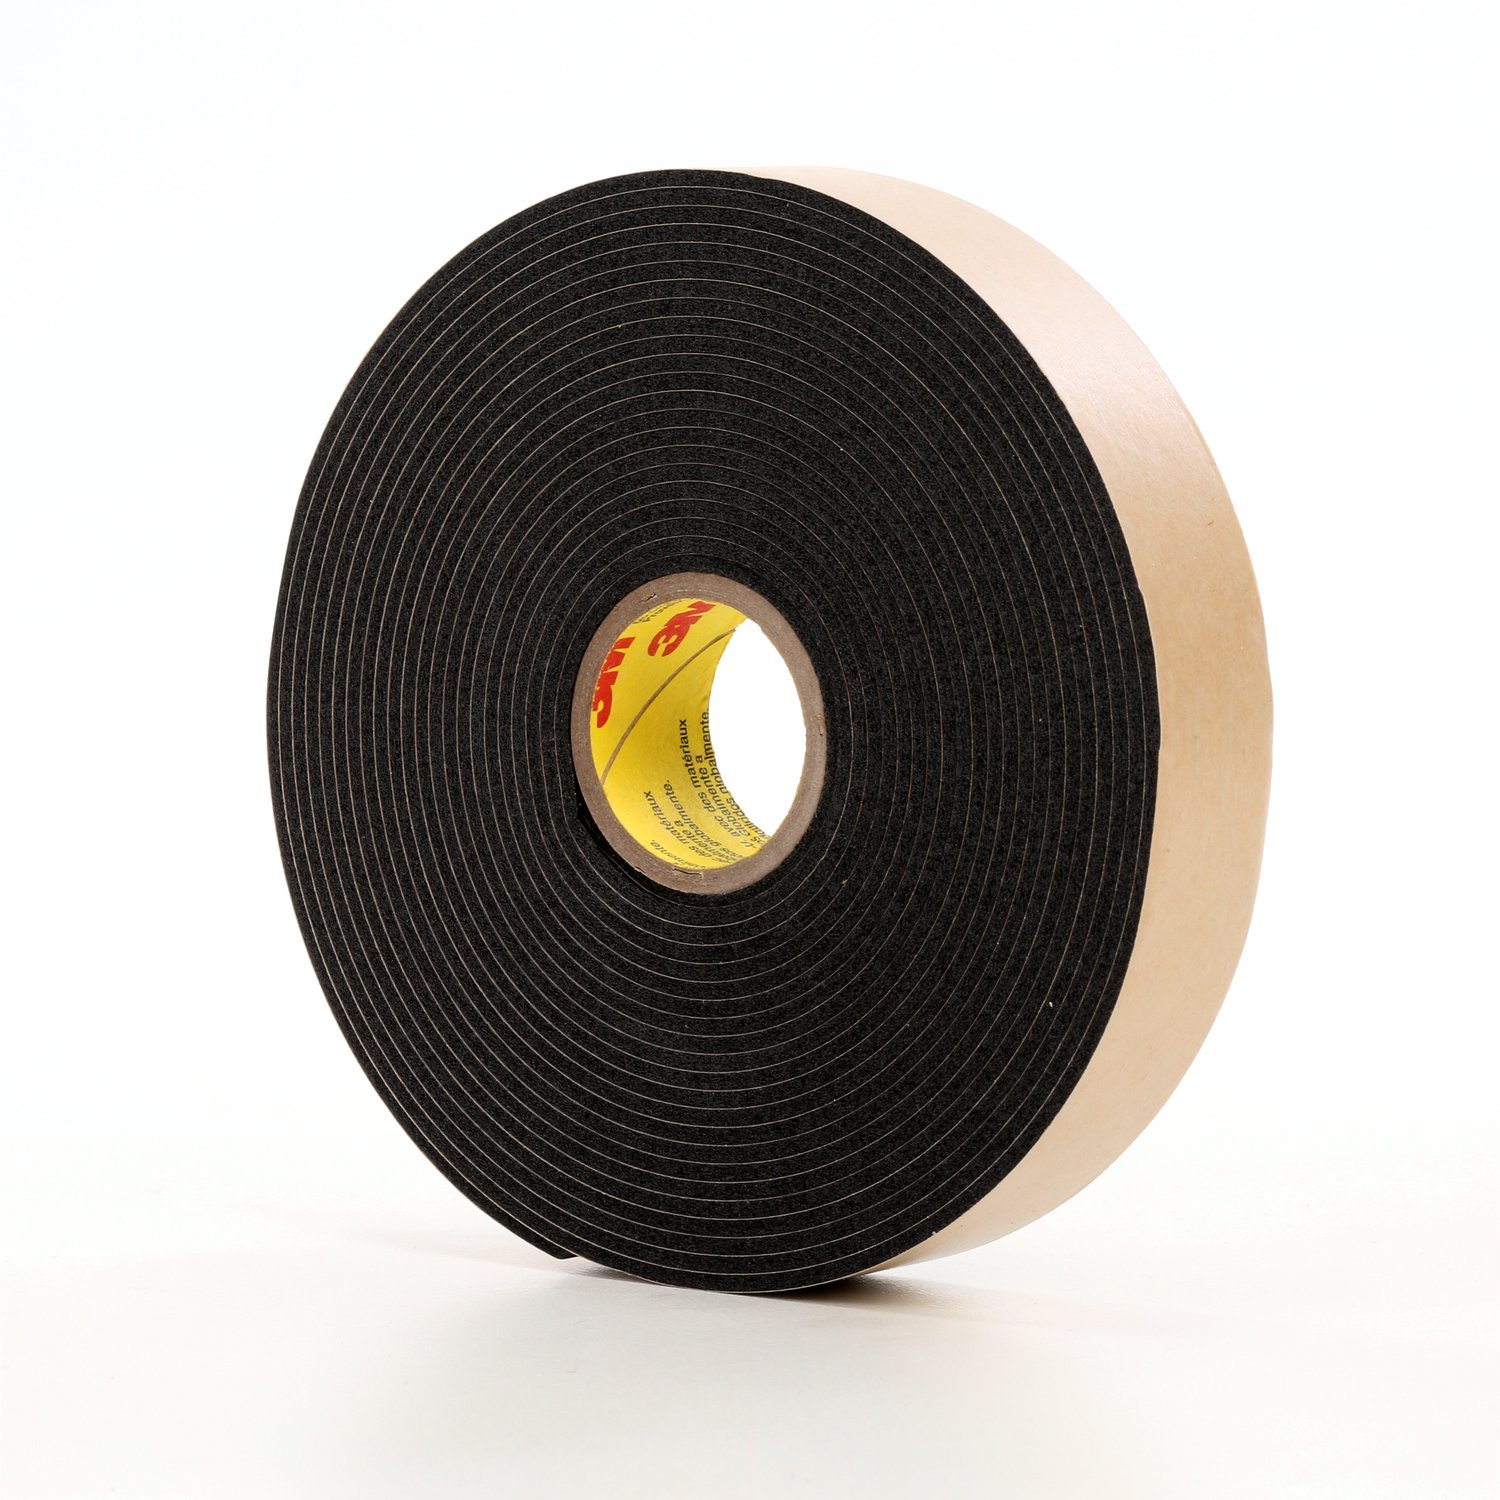 7010376093 - 3M Double Coated Polyethylene Foam Tape 4496B, Black, 18 in x 36 Yds,
62 mil, 1 roll per case